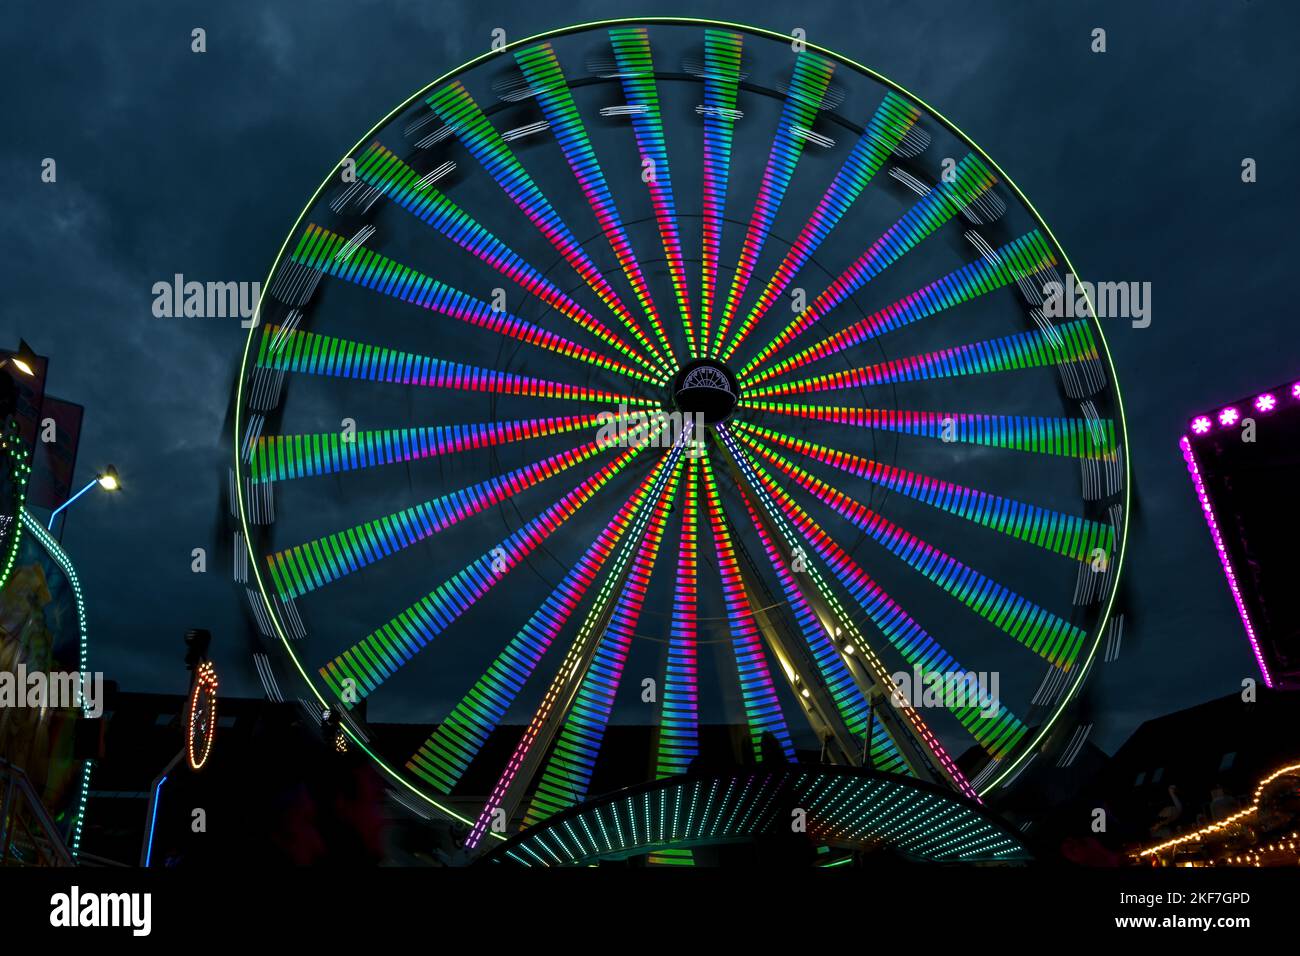 Lunga esposizione di una ruota gigante in movimento con luci colorate in una fiera di natale contro un cielo nuvoloso notte, immagine astratta, sfocatura del movimento Foto Stock